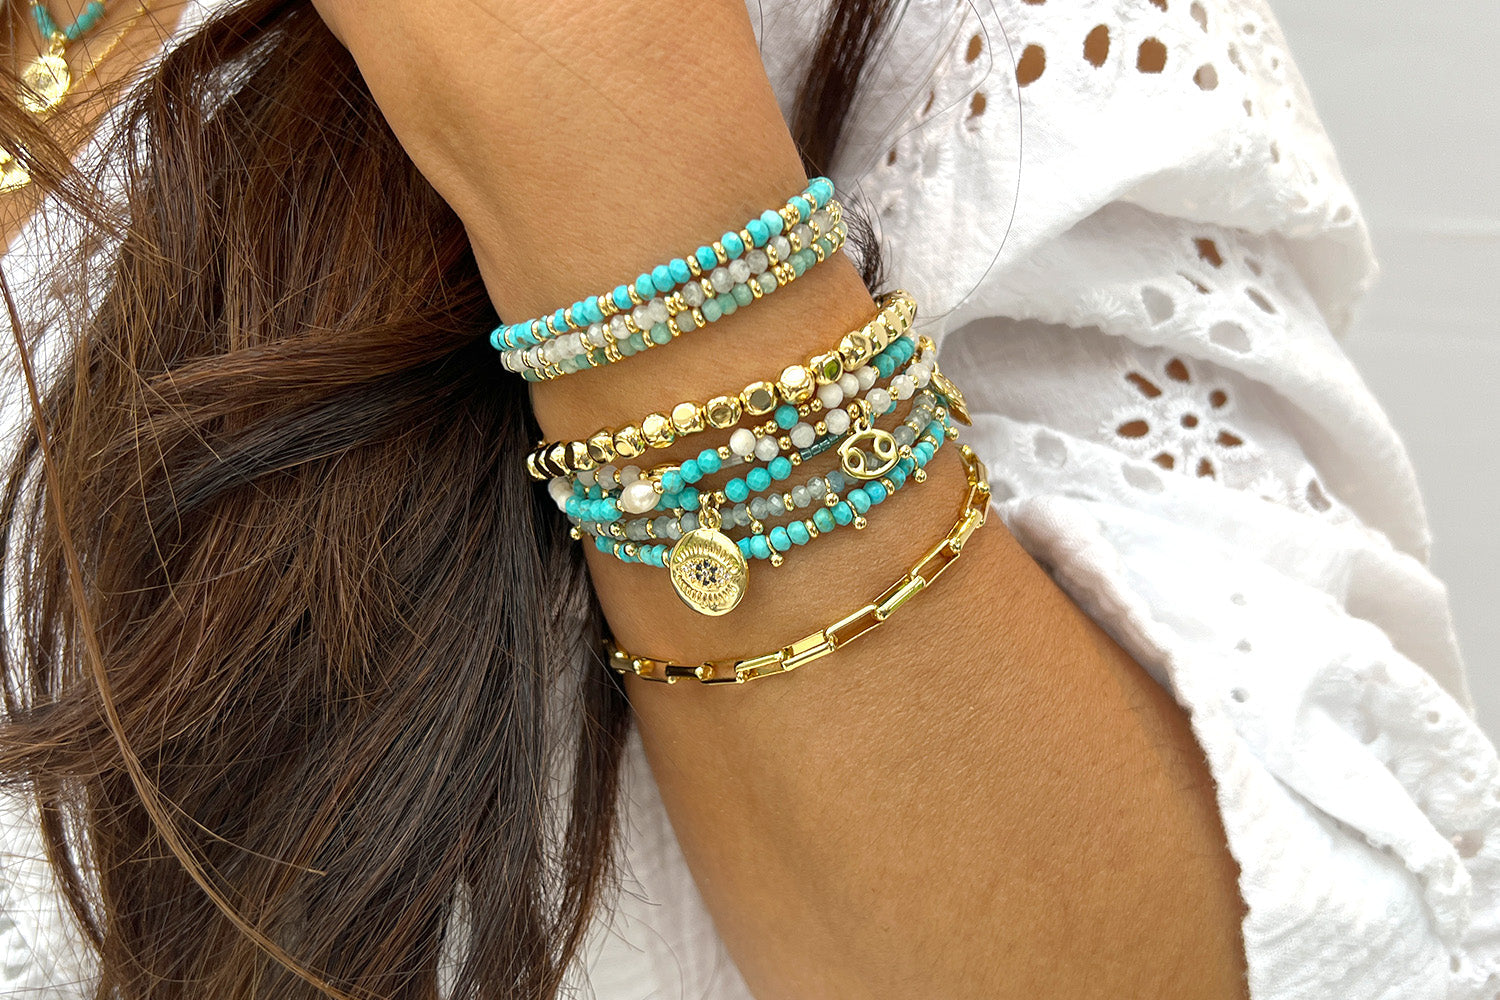 Blog | Turquoise stone bracelet, Turquoise stone benefits, Turquoise stone